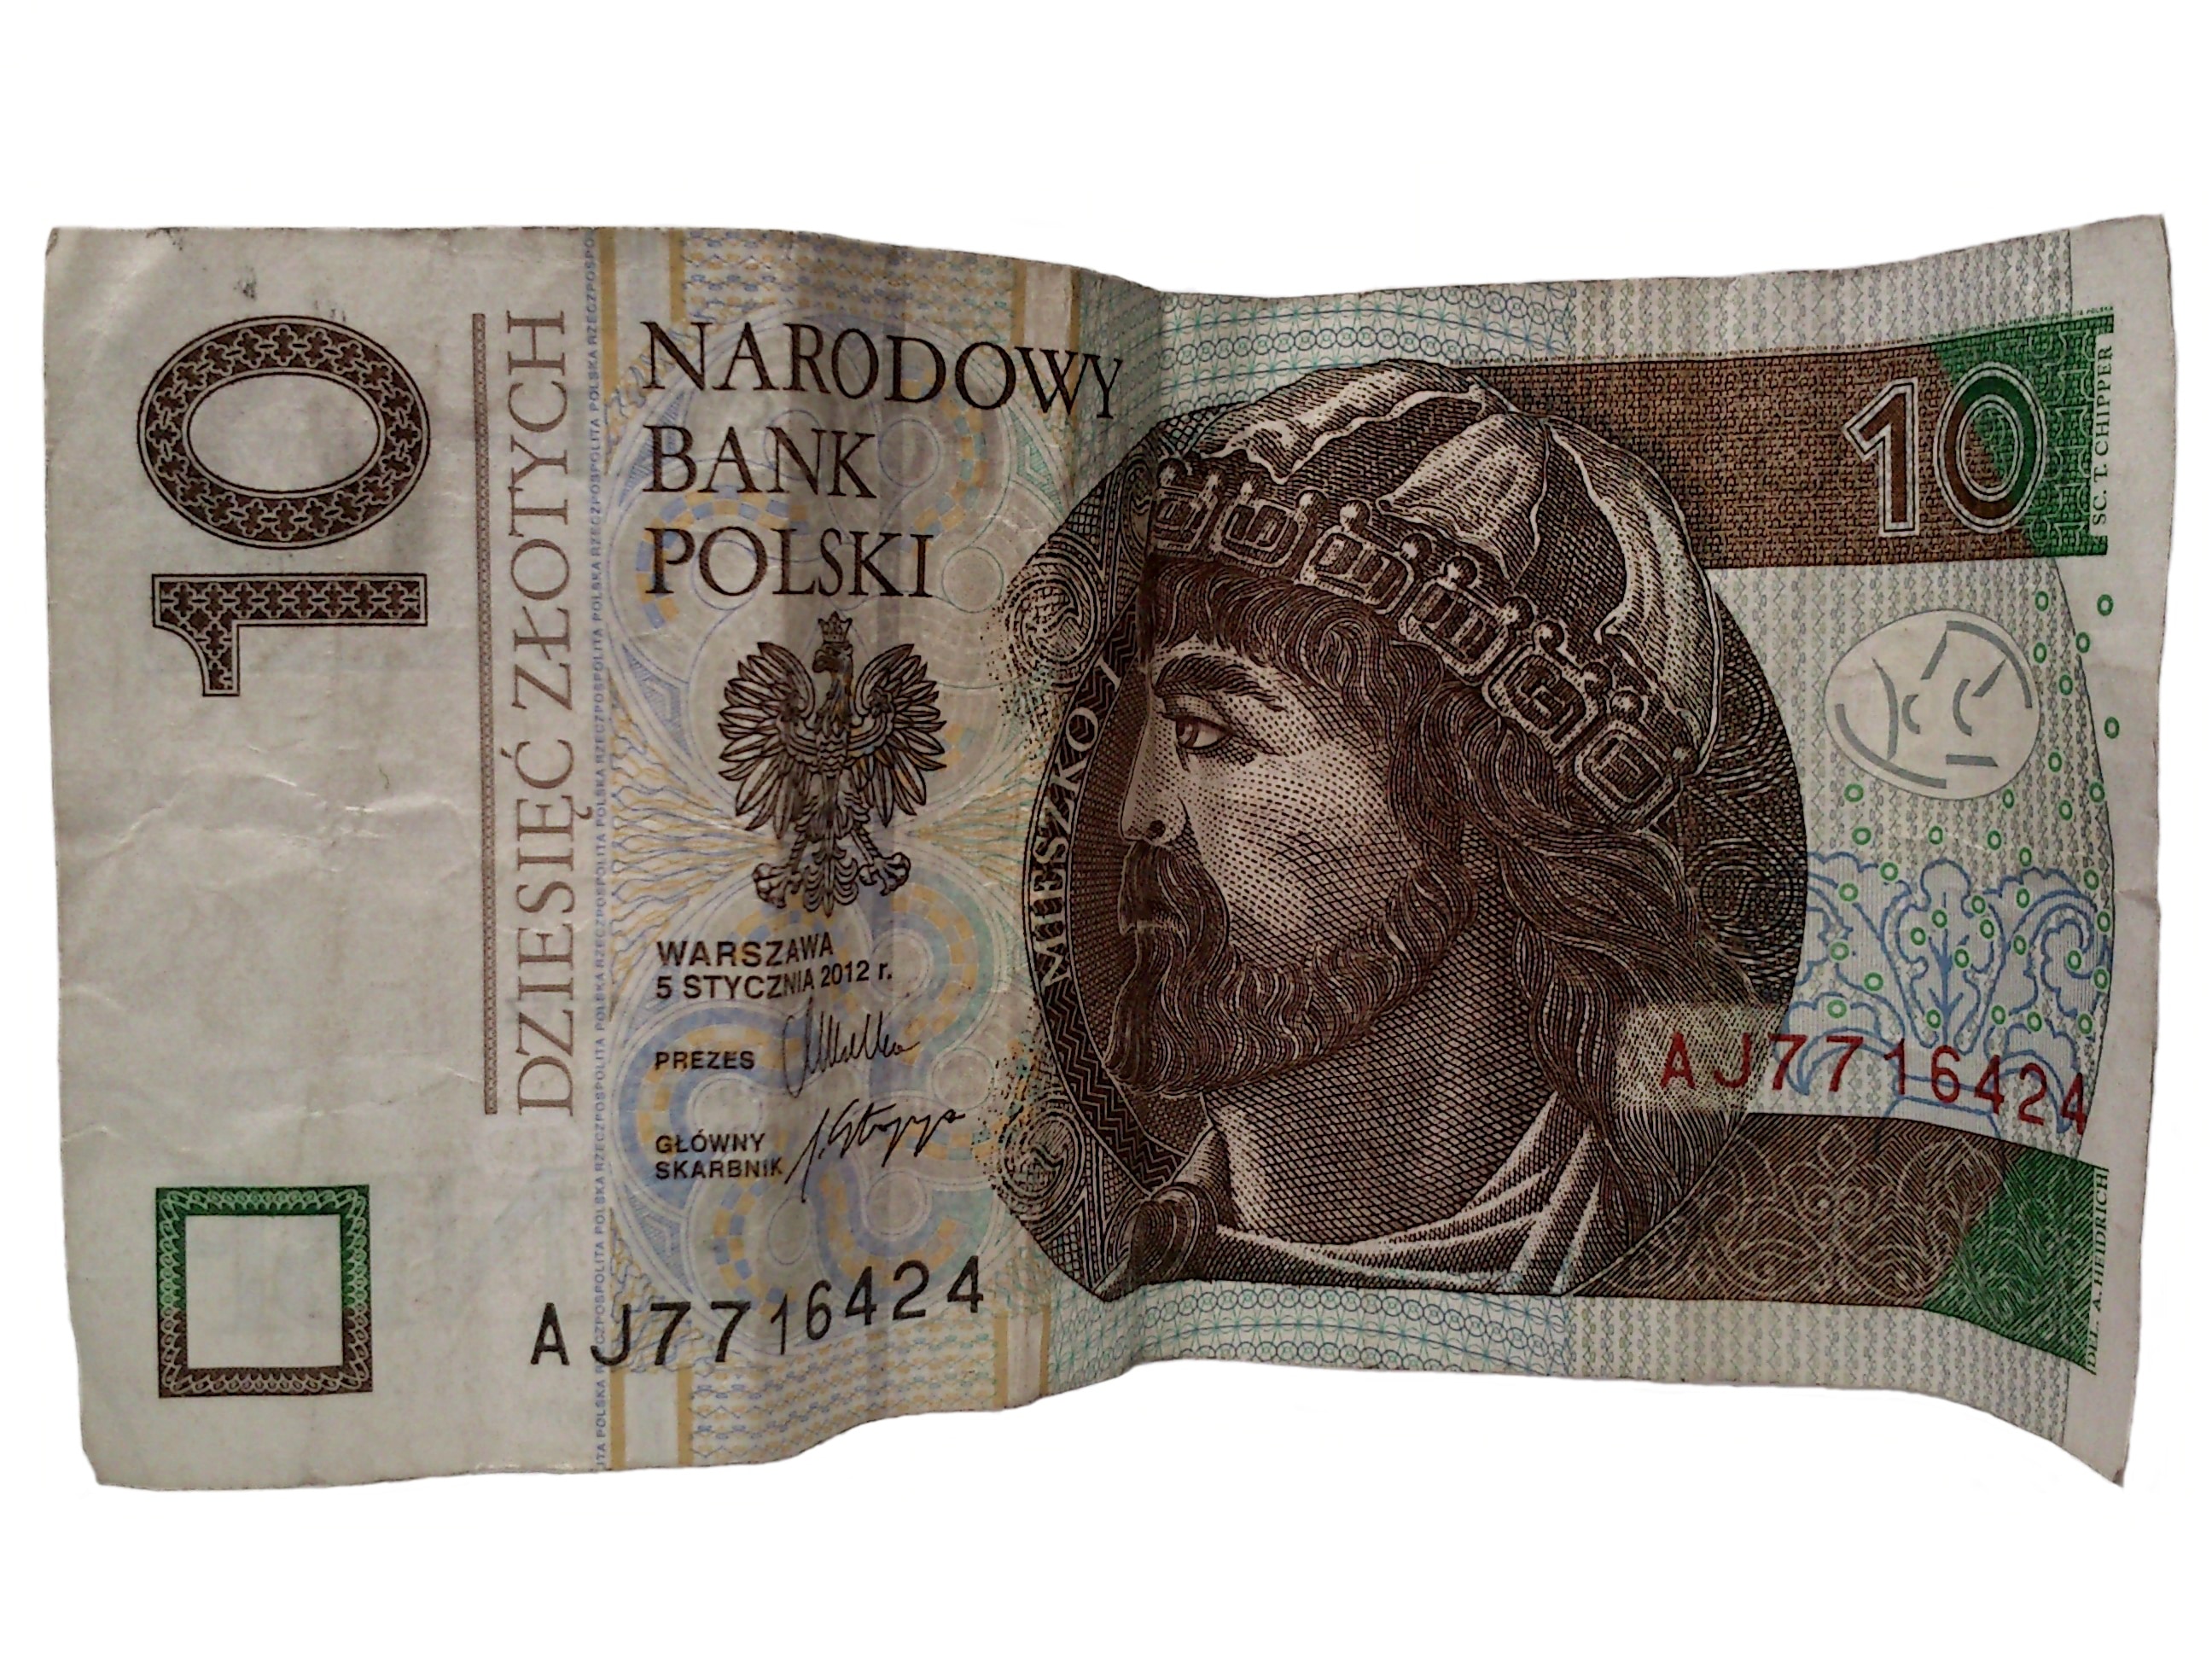 10 narodowy bank polski